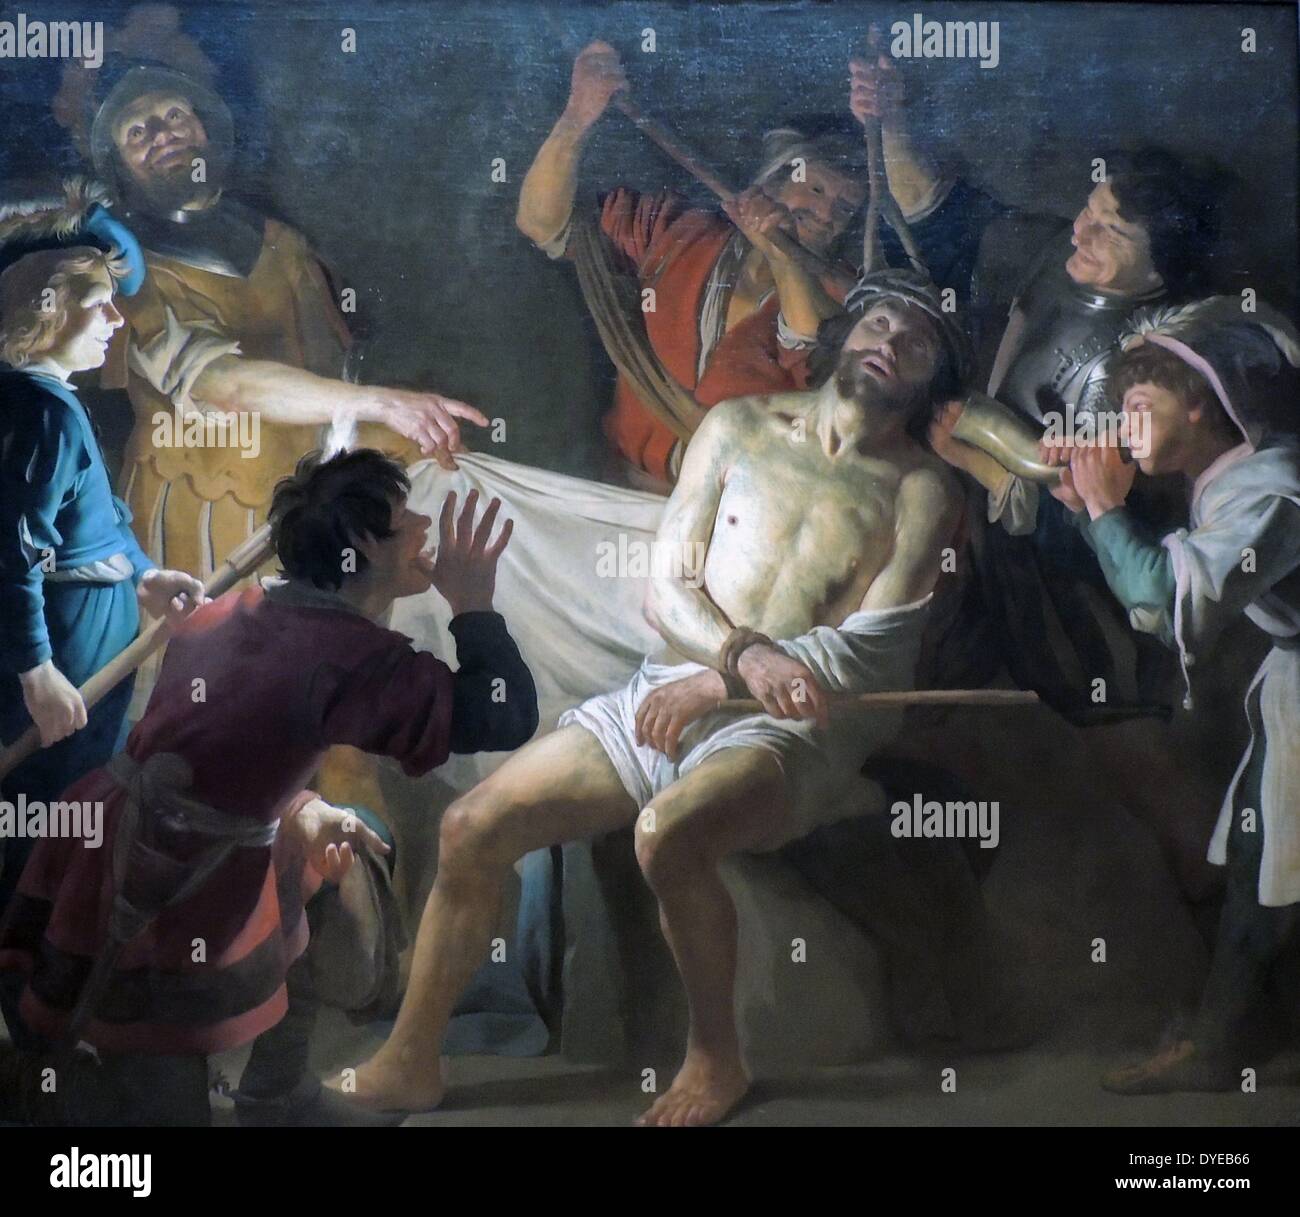 Cristo coronado de espinas por Gerard van Honthorst (1592-1656) óleo sobre lienzo, c 1622. Antes del juicio de Cristo, los soldados romanos colocaron una trenzada corona de espinas en la cabeza, viste con un manto y se burlaban de él. Después de todo, él no fue el "Rey de los judíos'? La escena es dramáticamente iluminado por una antorcha, celebrada por el muchacho de la izquierda. Honthorst probablemente hizo esta pintura para una iglesia católica clandestina (schullkerk) en Ámsterdam. Foto de stock